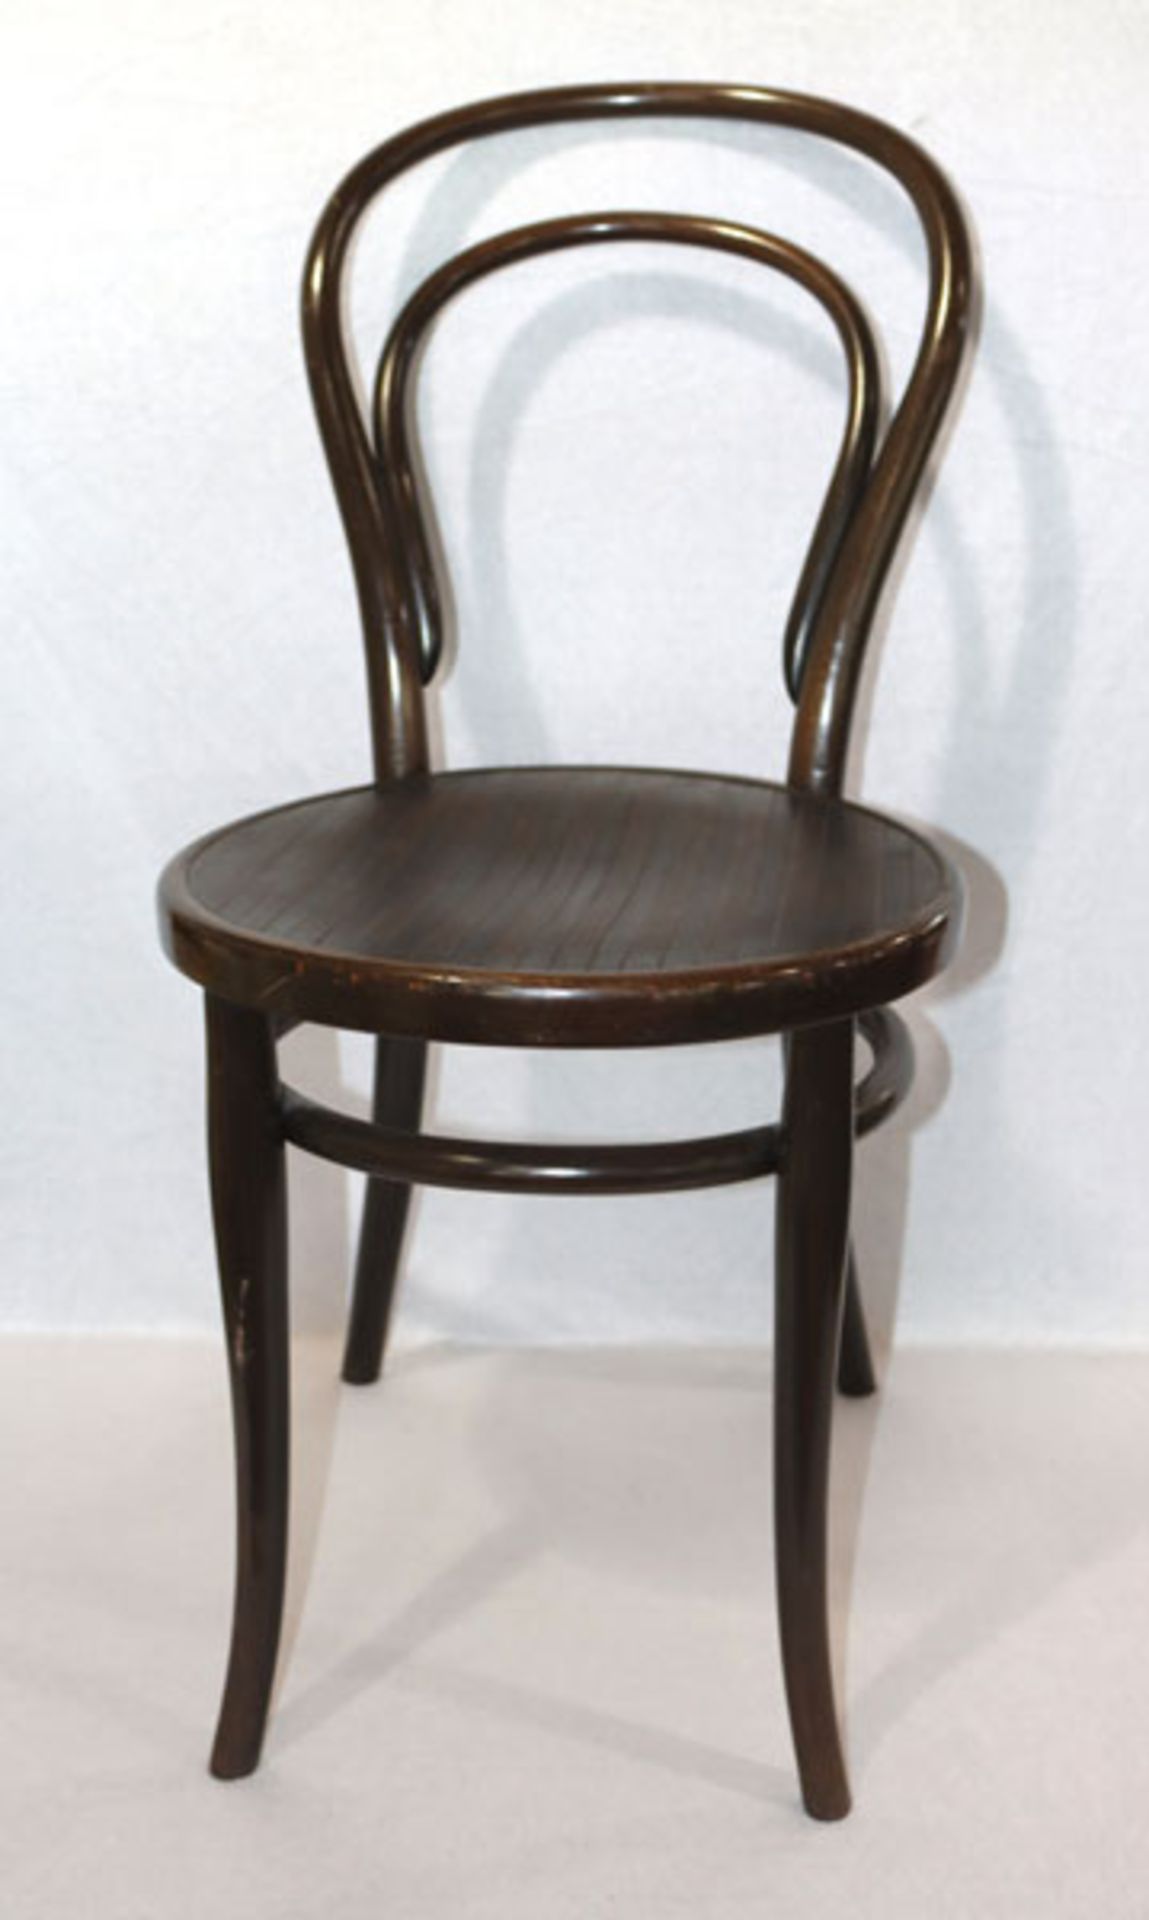 6 Thonet Stühle, dunkelbraun, H 90 cm, B 42 cm, T 42 cm, leichte Gebrauchsspuren